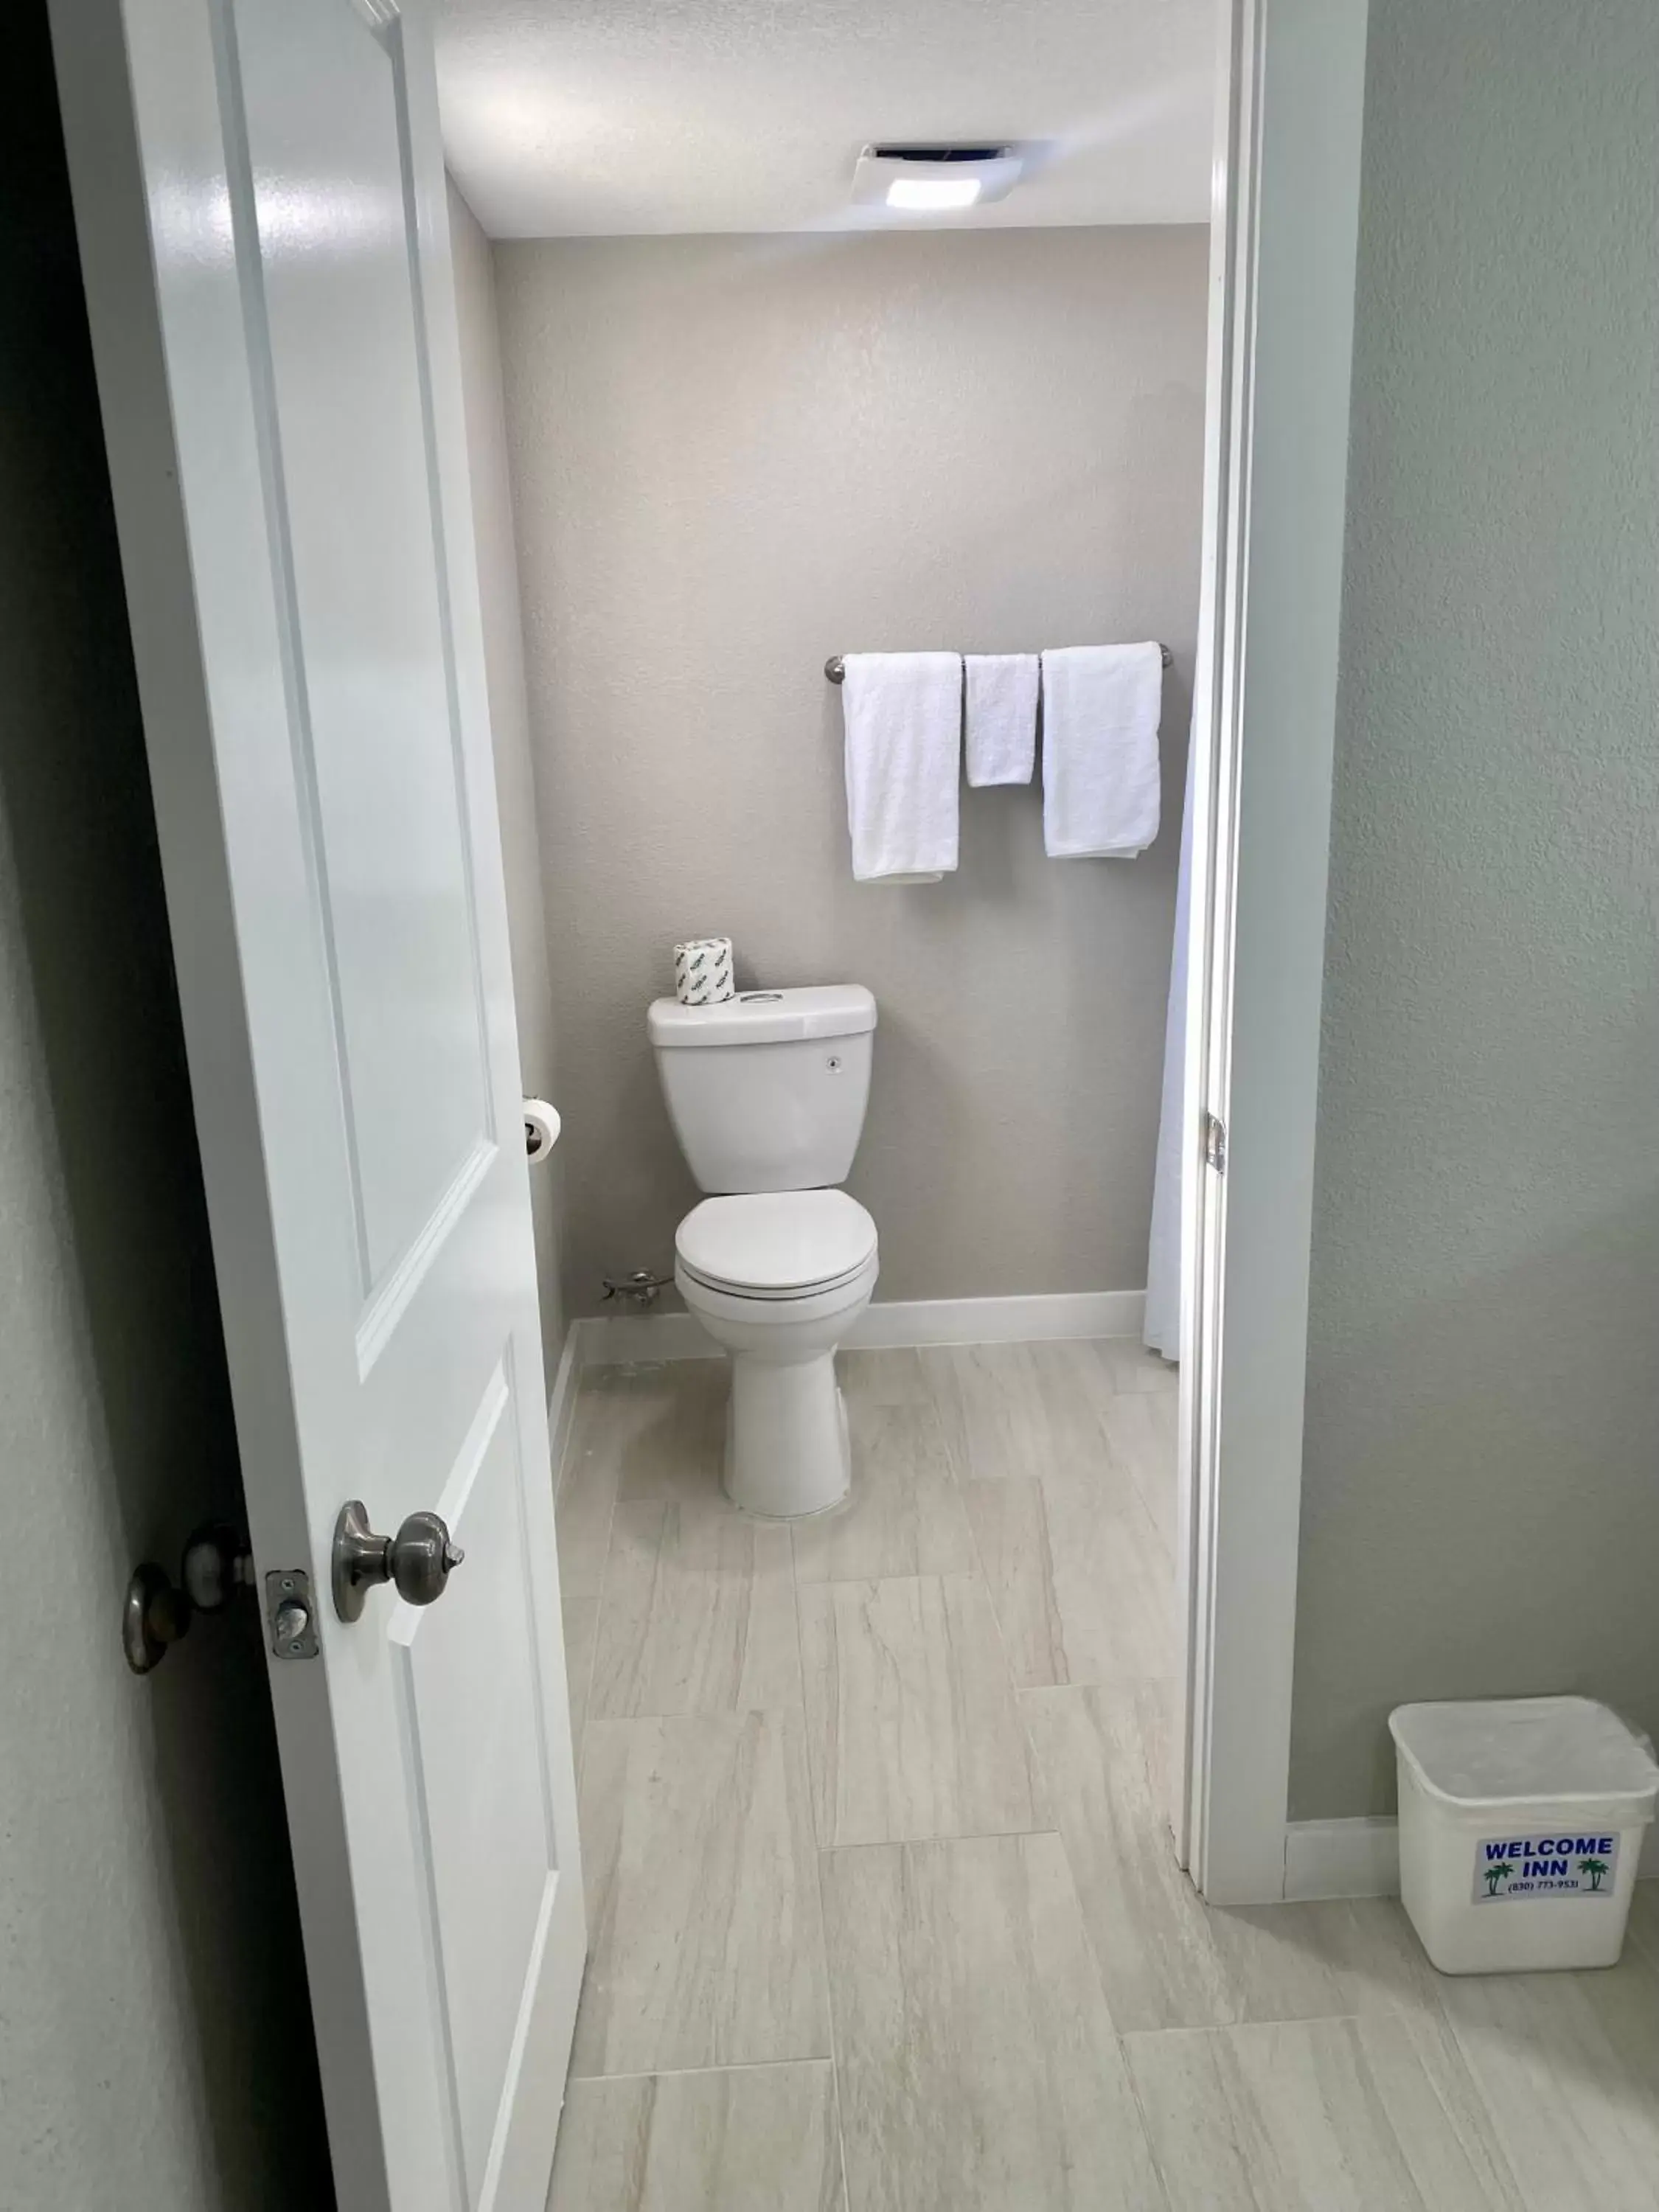 Bathroom in Welcome Inn